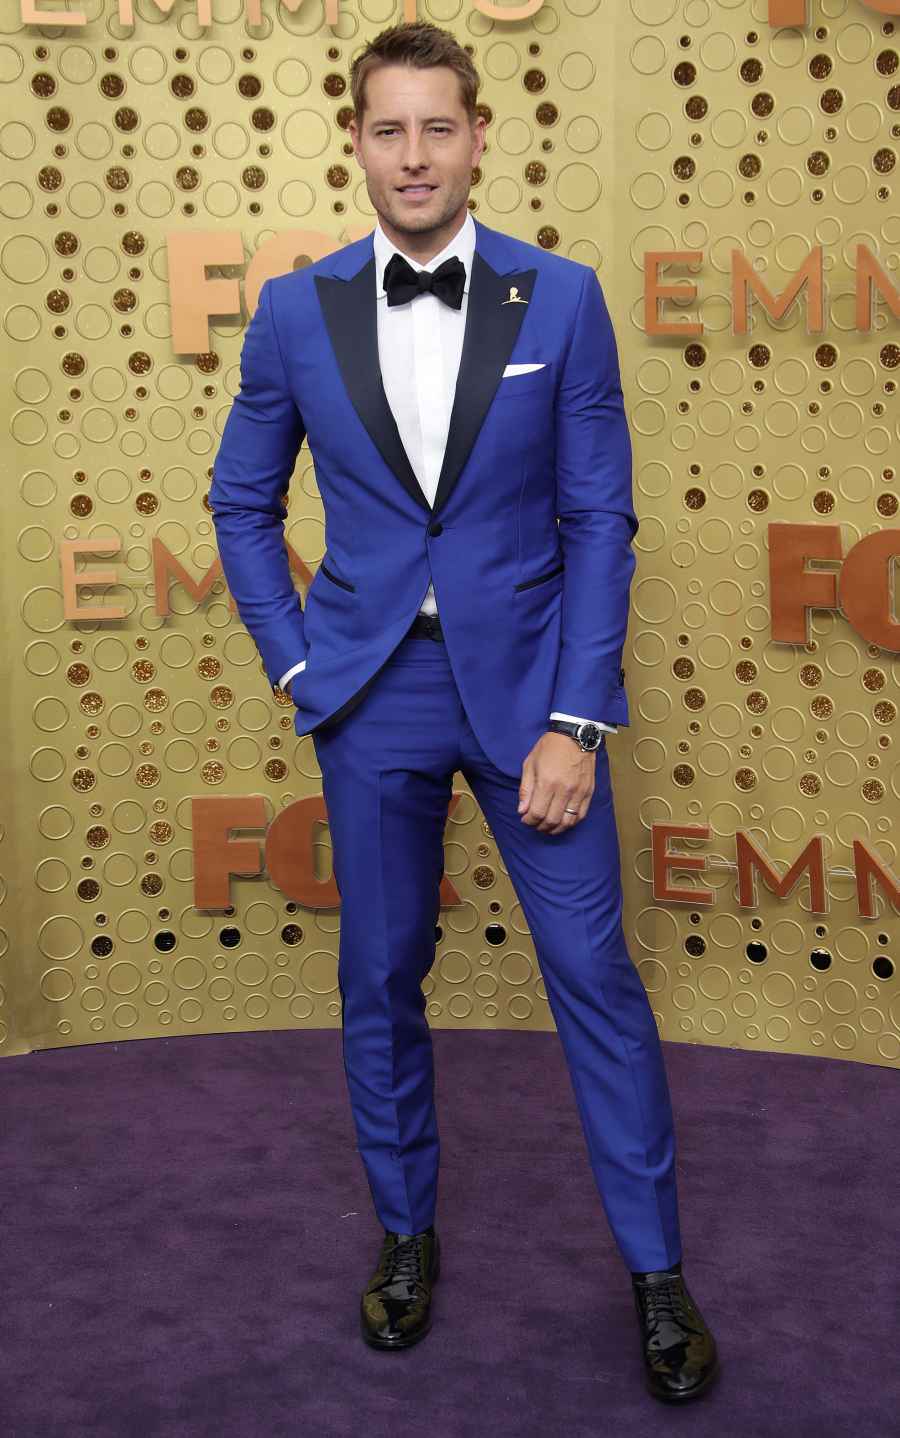 Emmys 2019 Hottest Hunks - Justin Hartley